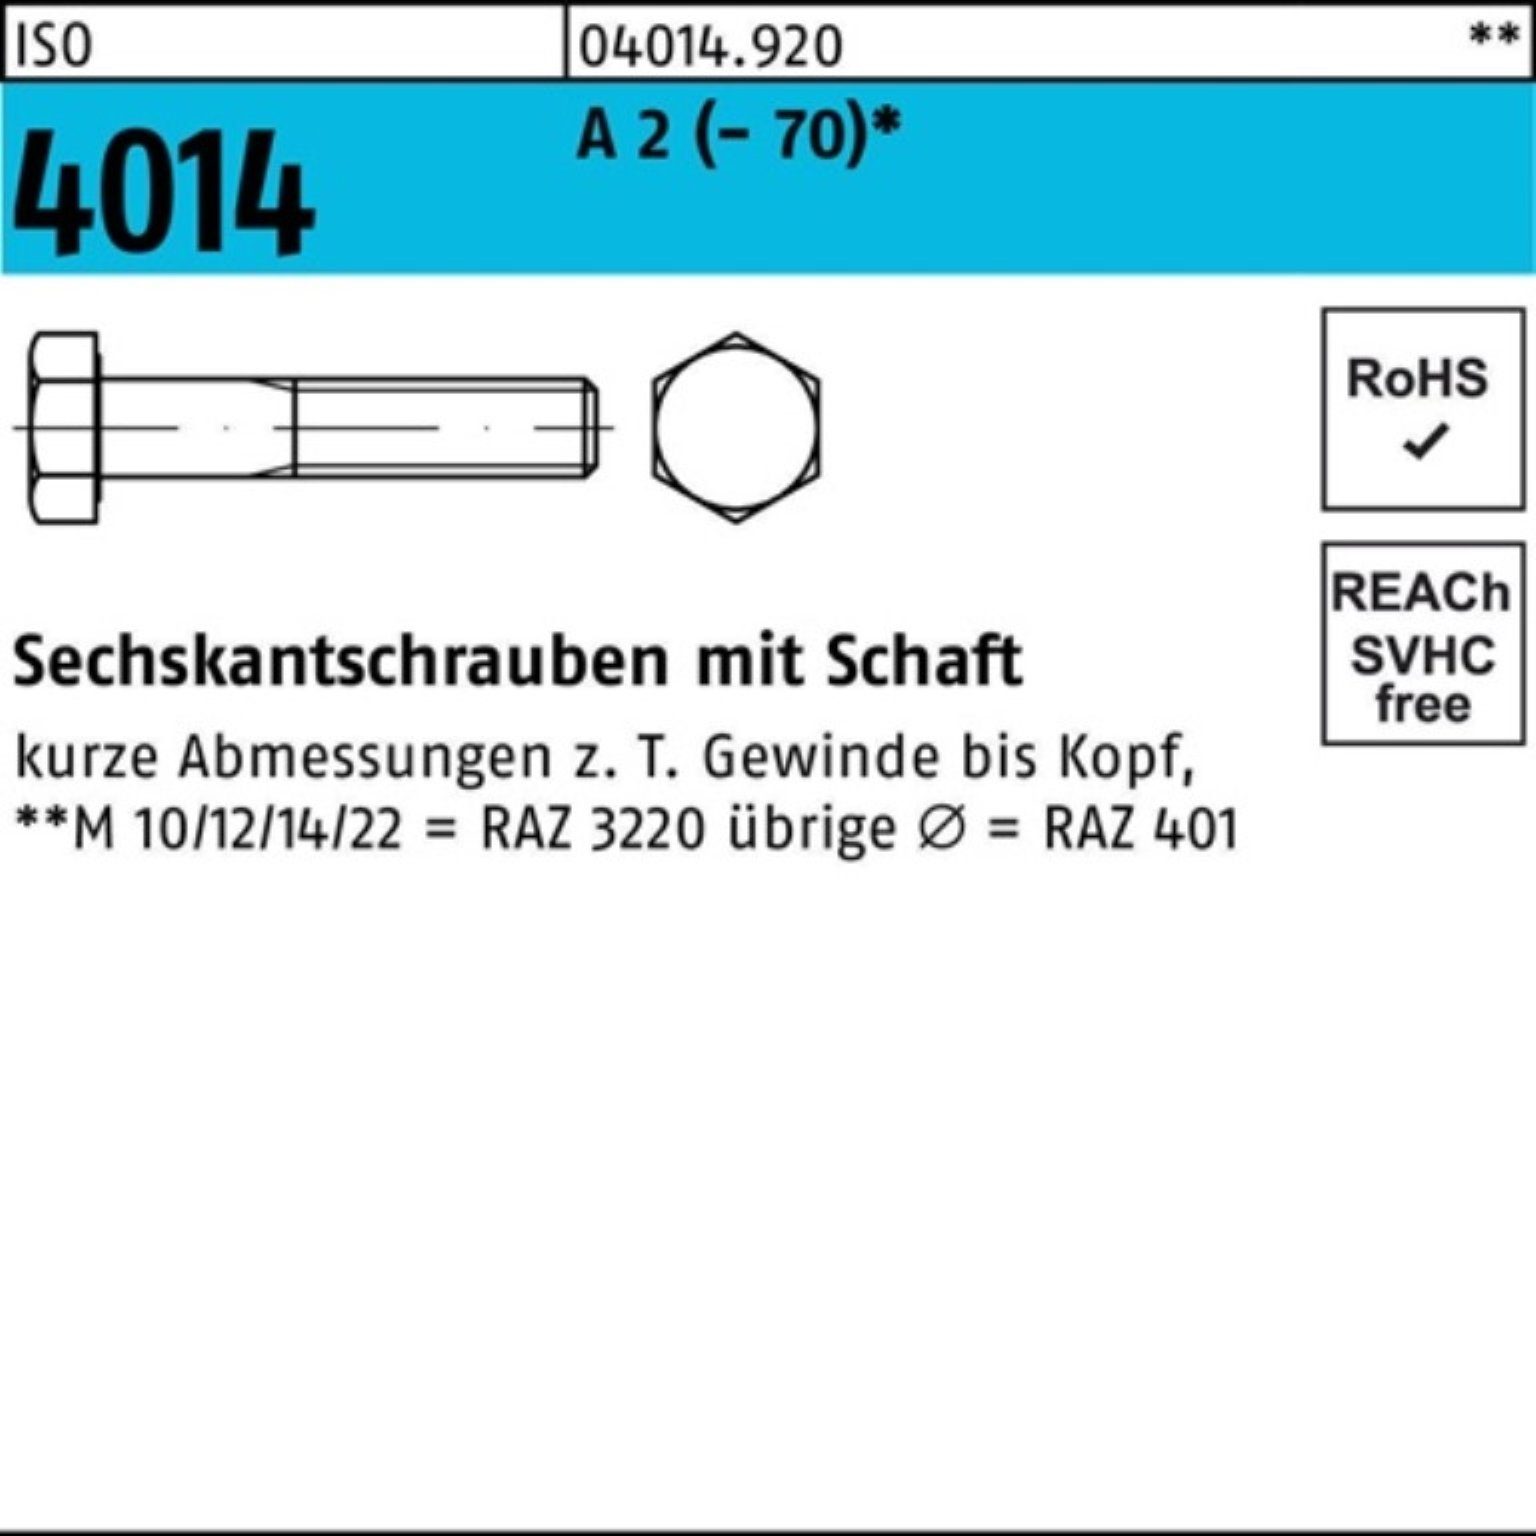 Bufab Sechskantschraube 100er Pack Sechskantschraube ISO 4014 Schaft M12x 220 A 2 (70) 1 St